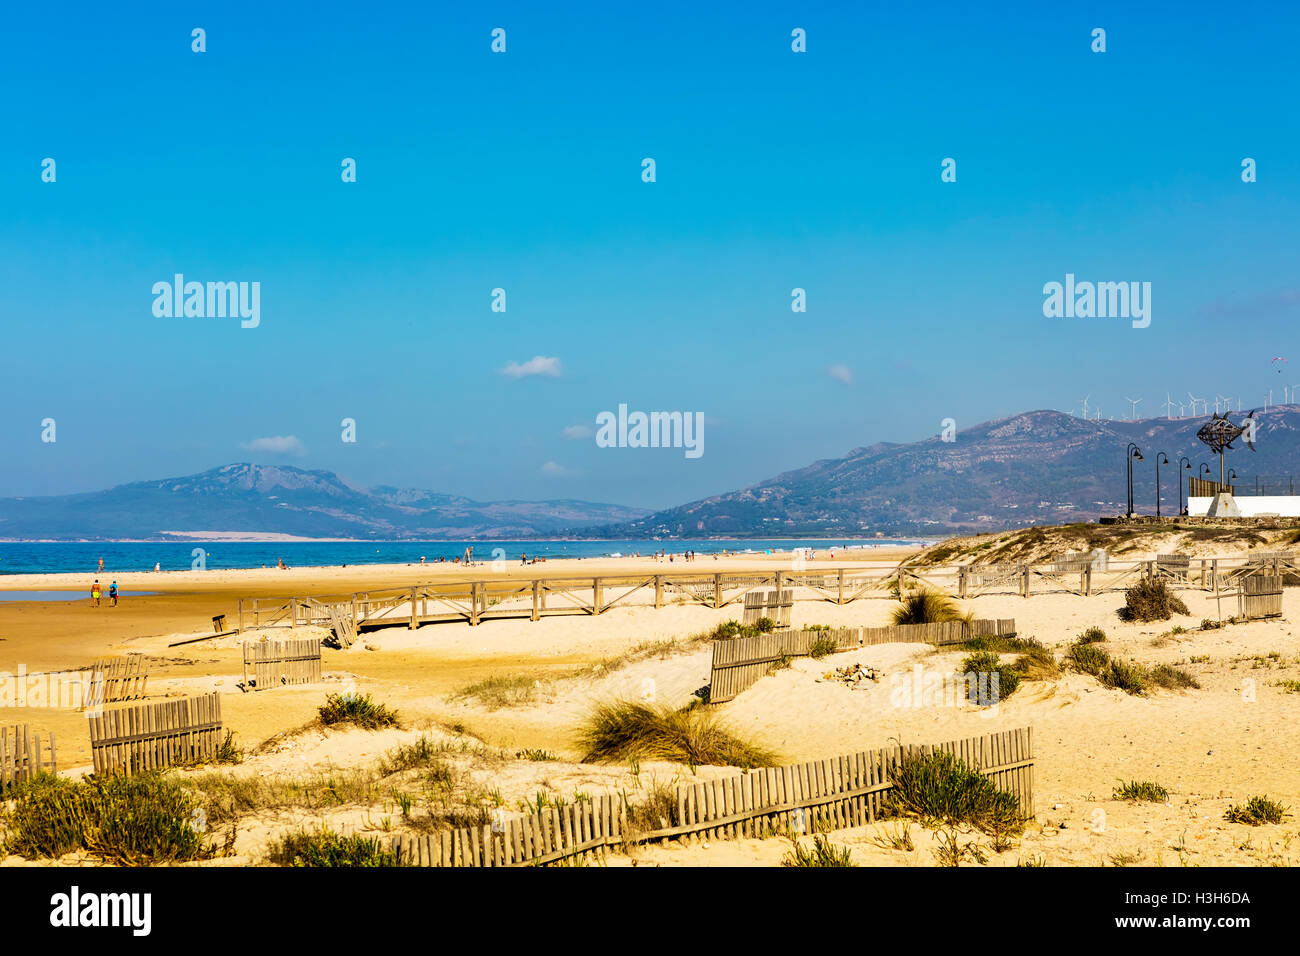 Plages de sable blanc de la côte Atlantique à la côte espagnole de Playa De Los Lances à Tarifa, Espagne. Banque D'Images